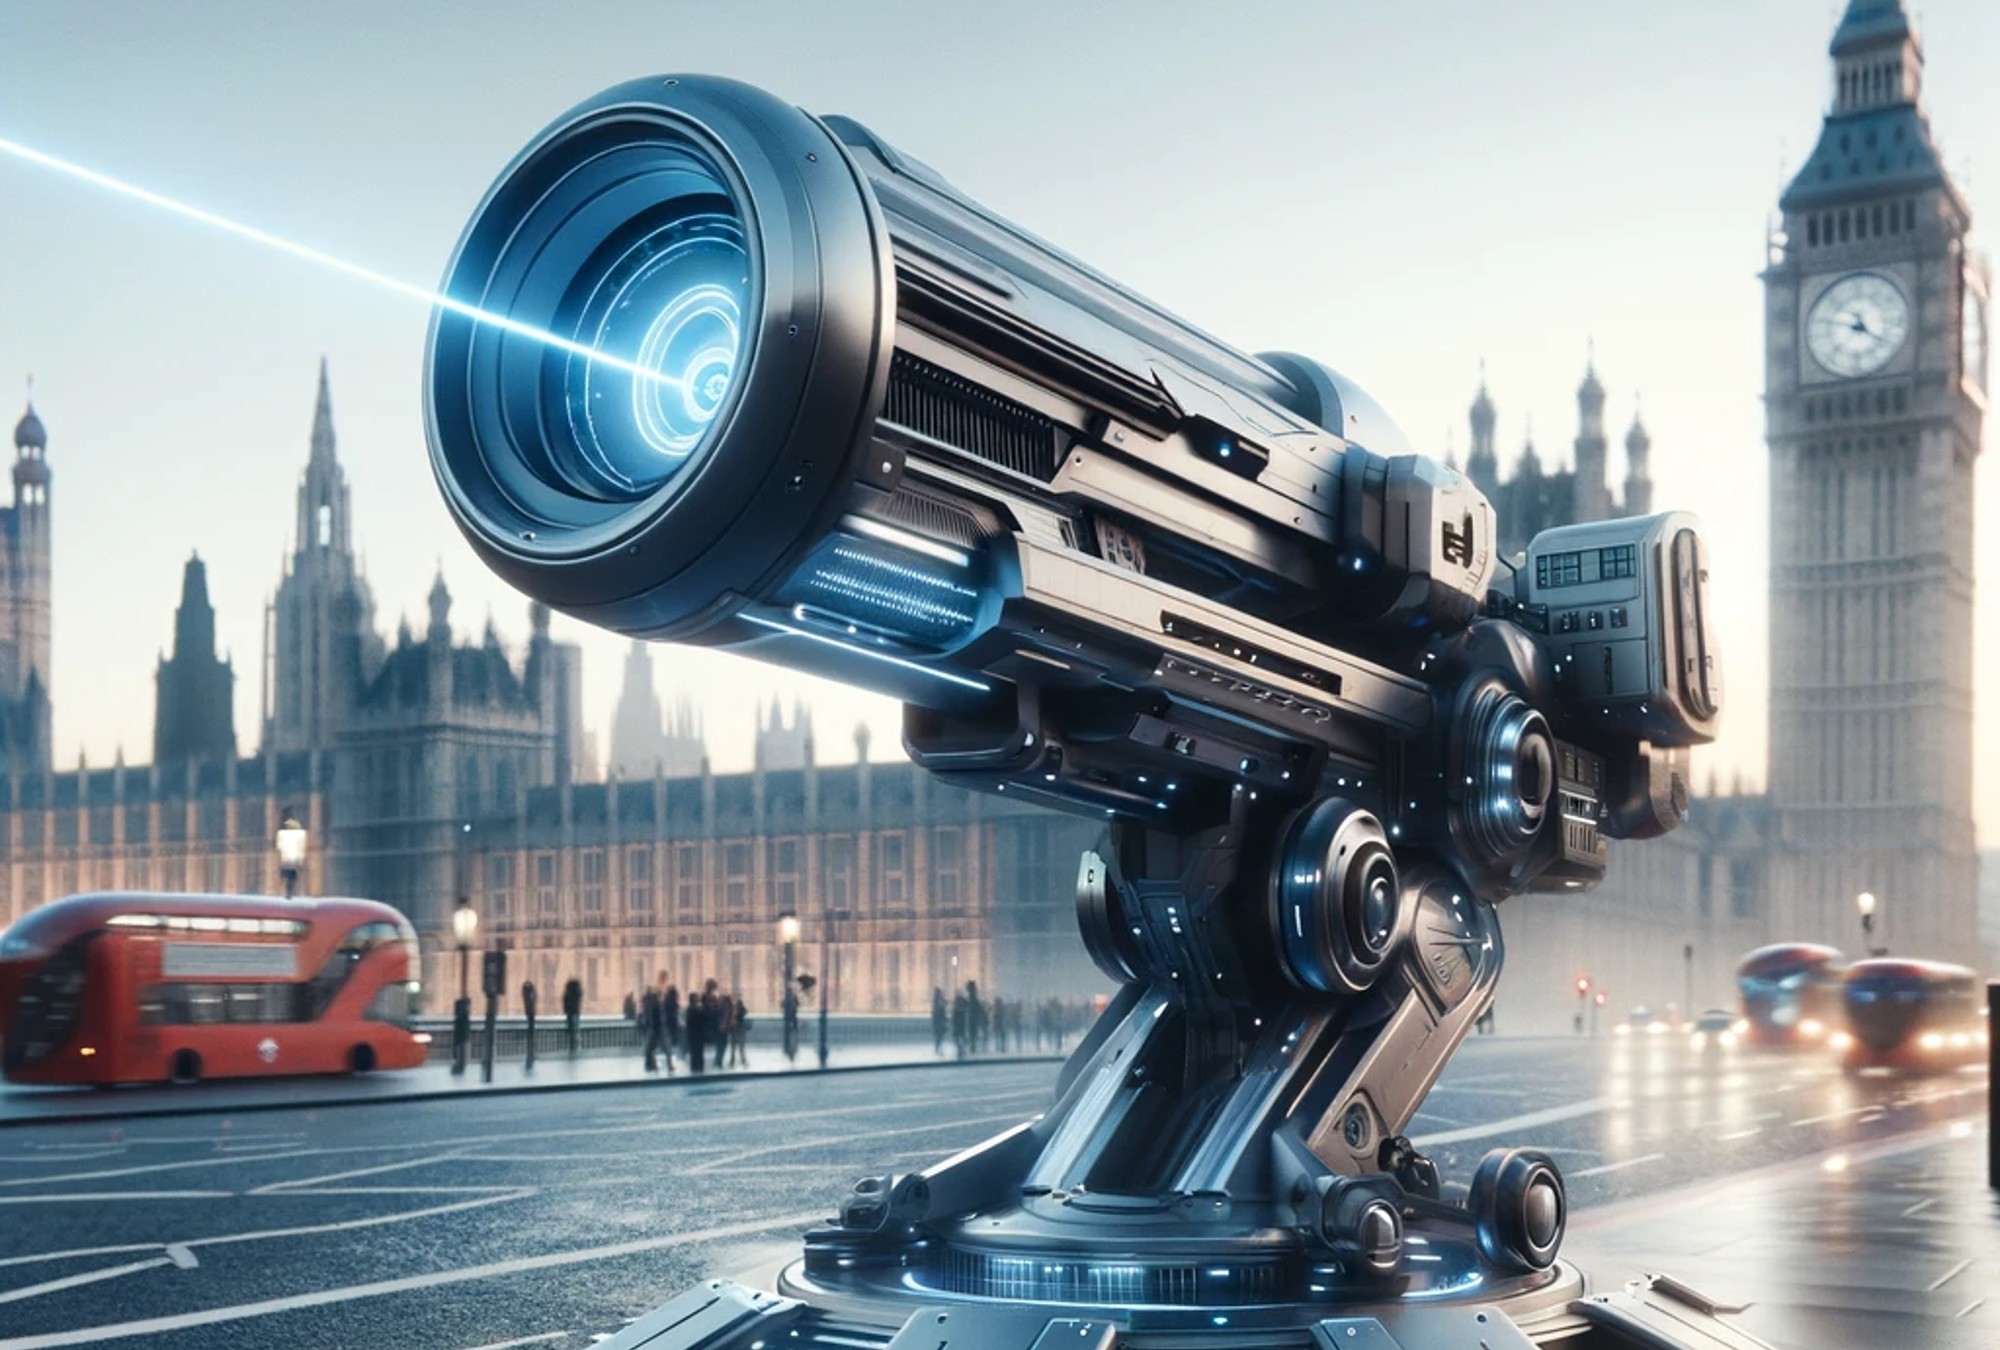 ¿Cómo imaginas el cañón láser del ejército británico?